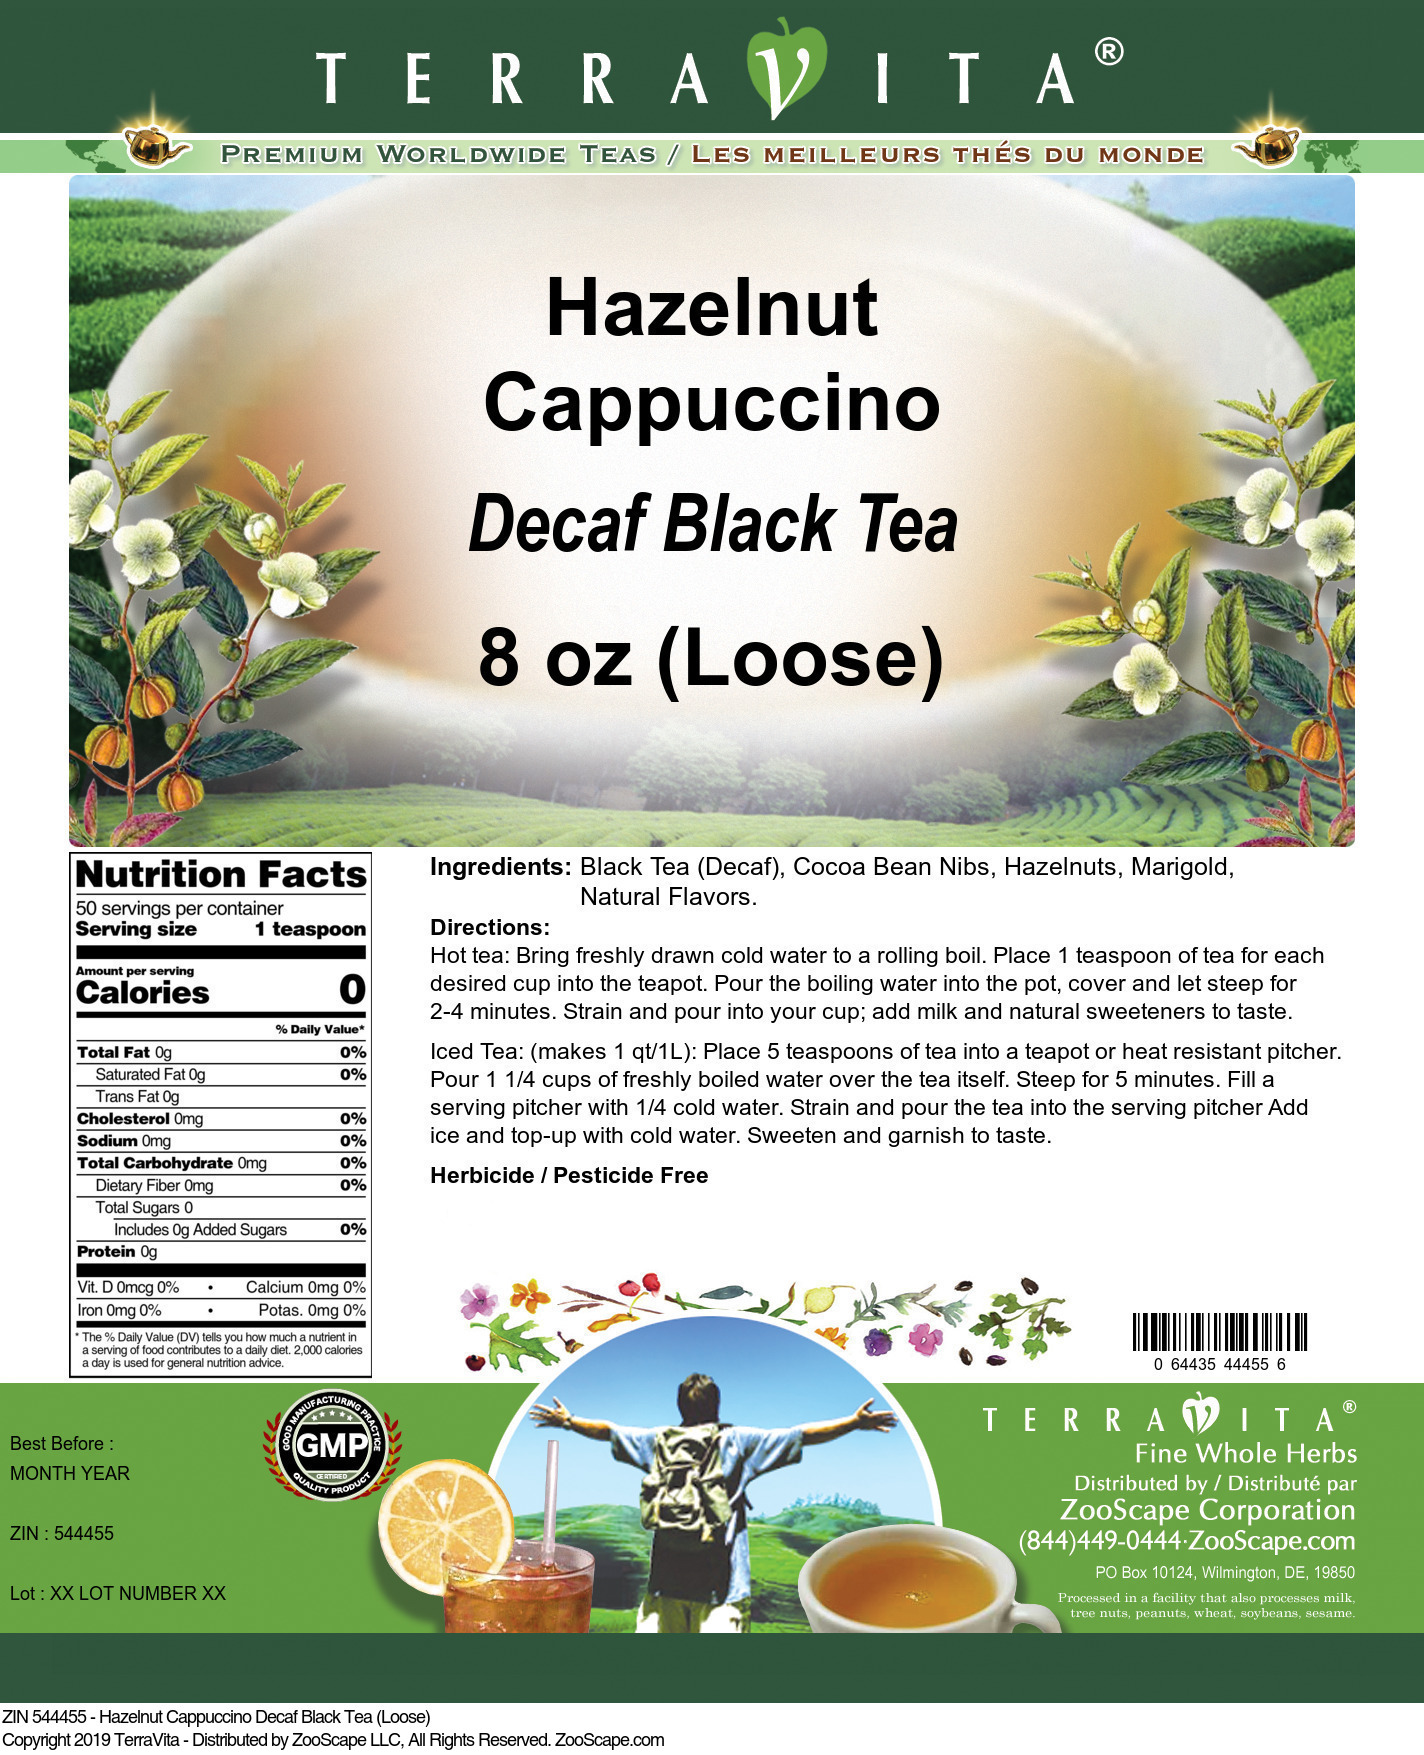 Hazelnut Cappuccino Decaf Black Tea (Loose) - Label